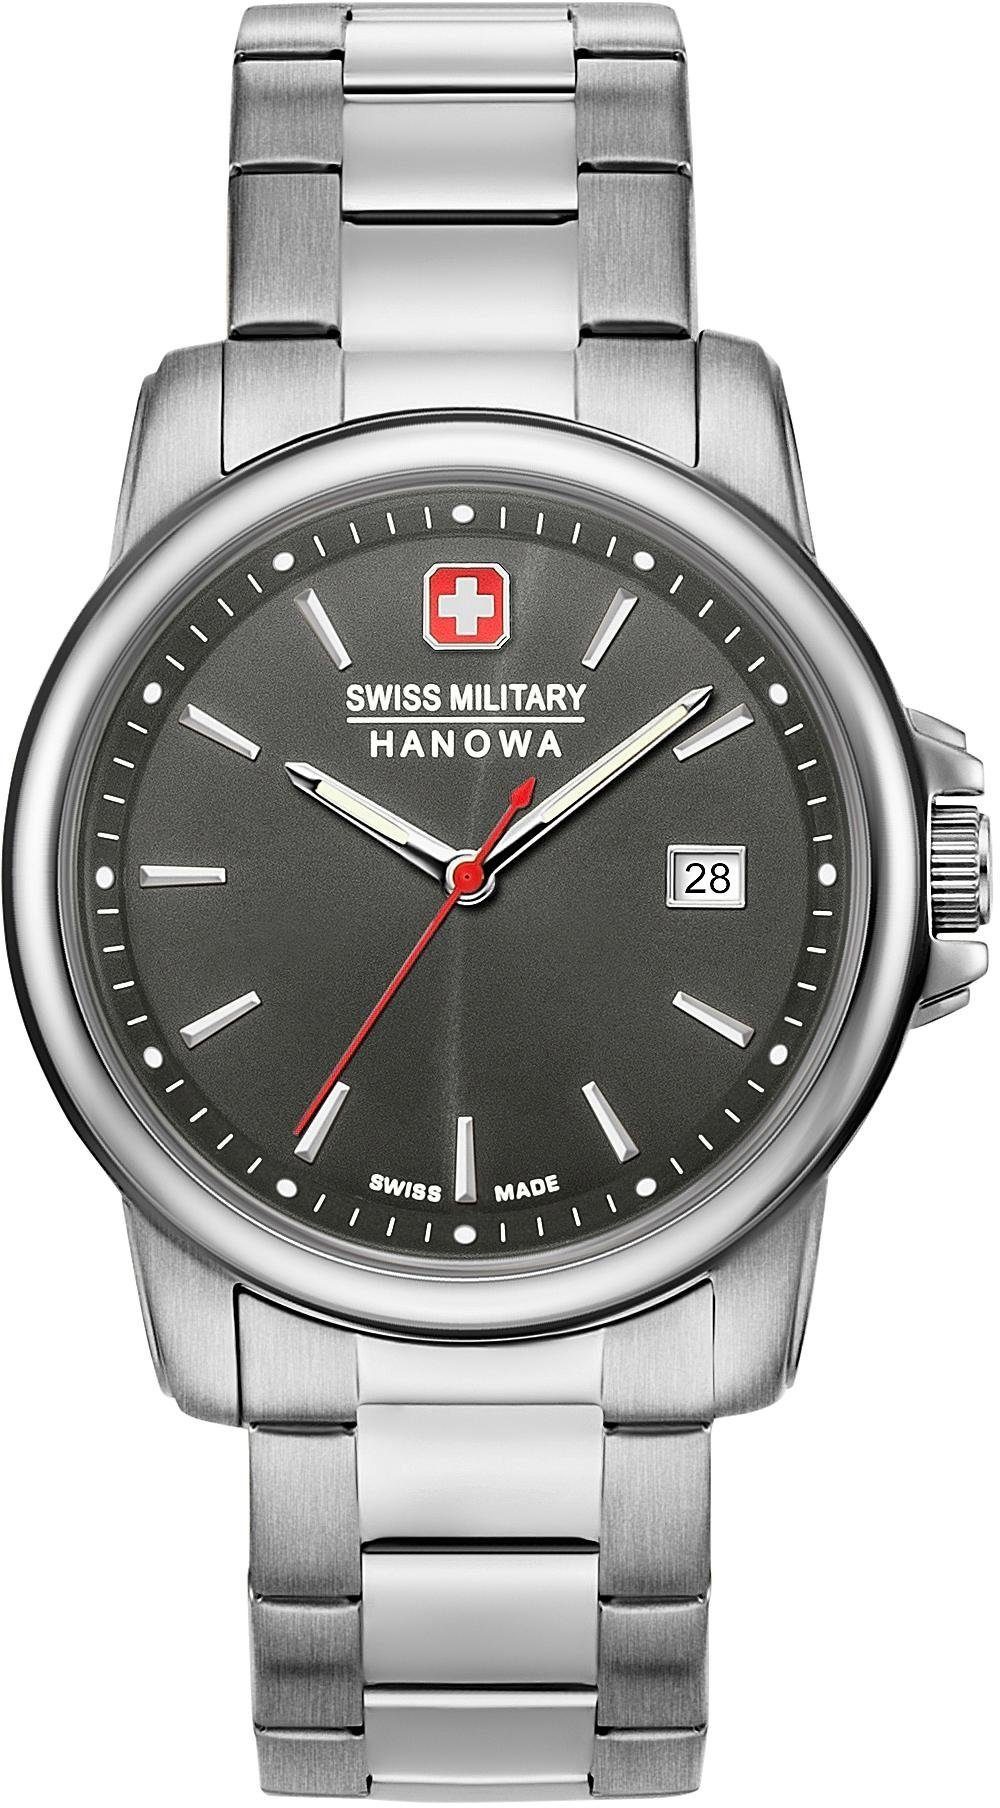 Swiss Military Hanowa Quarzuhr SWISS RECRUIT II, 06-5230.7.04.009, Armbanduhr, Herrenuhr, Schweizer Uhr, Datum, Saphirglas, Swiss Made